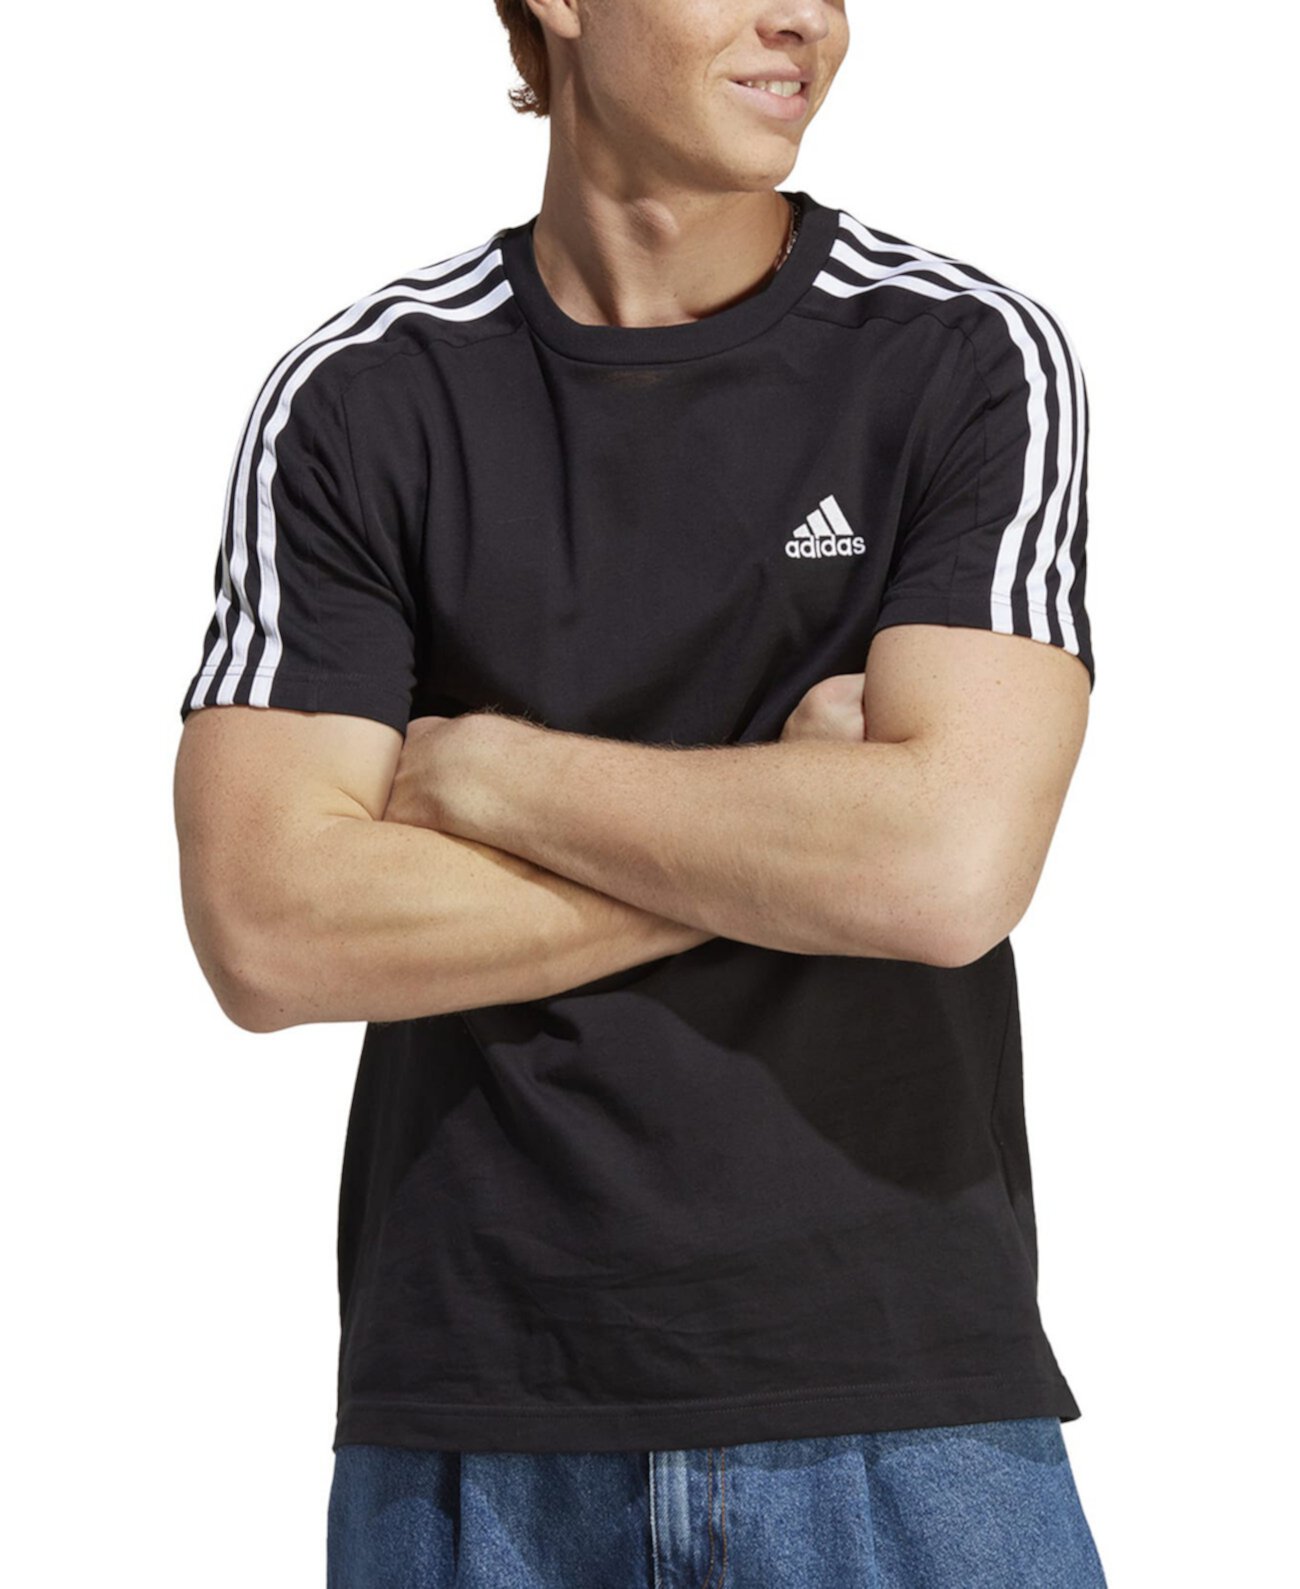 Мужская футболка Essentials с 3 полосками, стандартного кроя и графическим логотипом, стандартная, большая и высокая Adidas